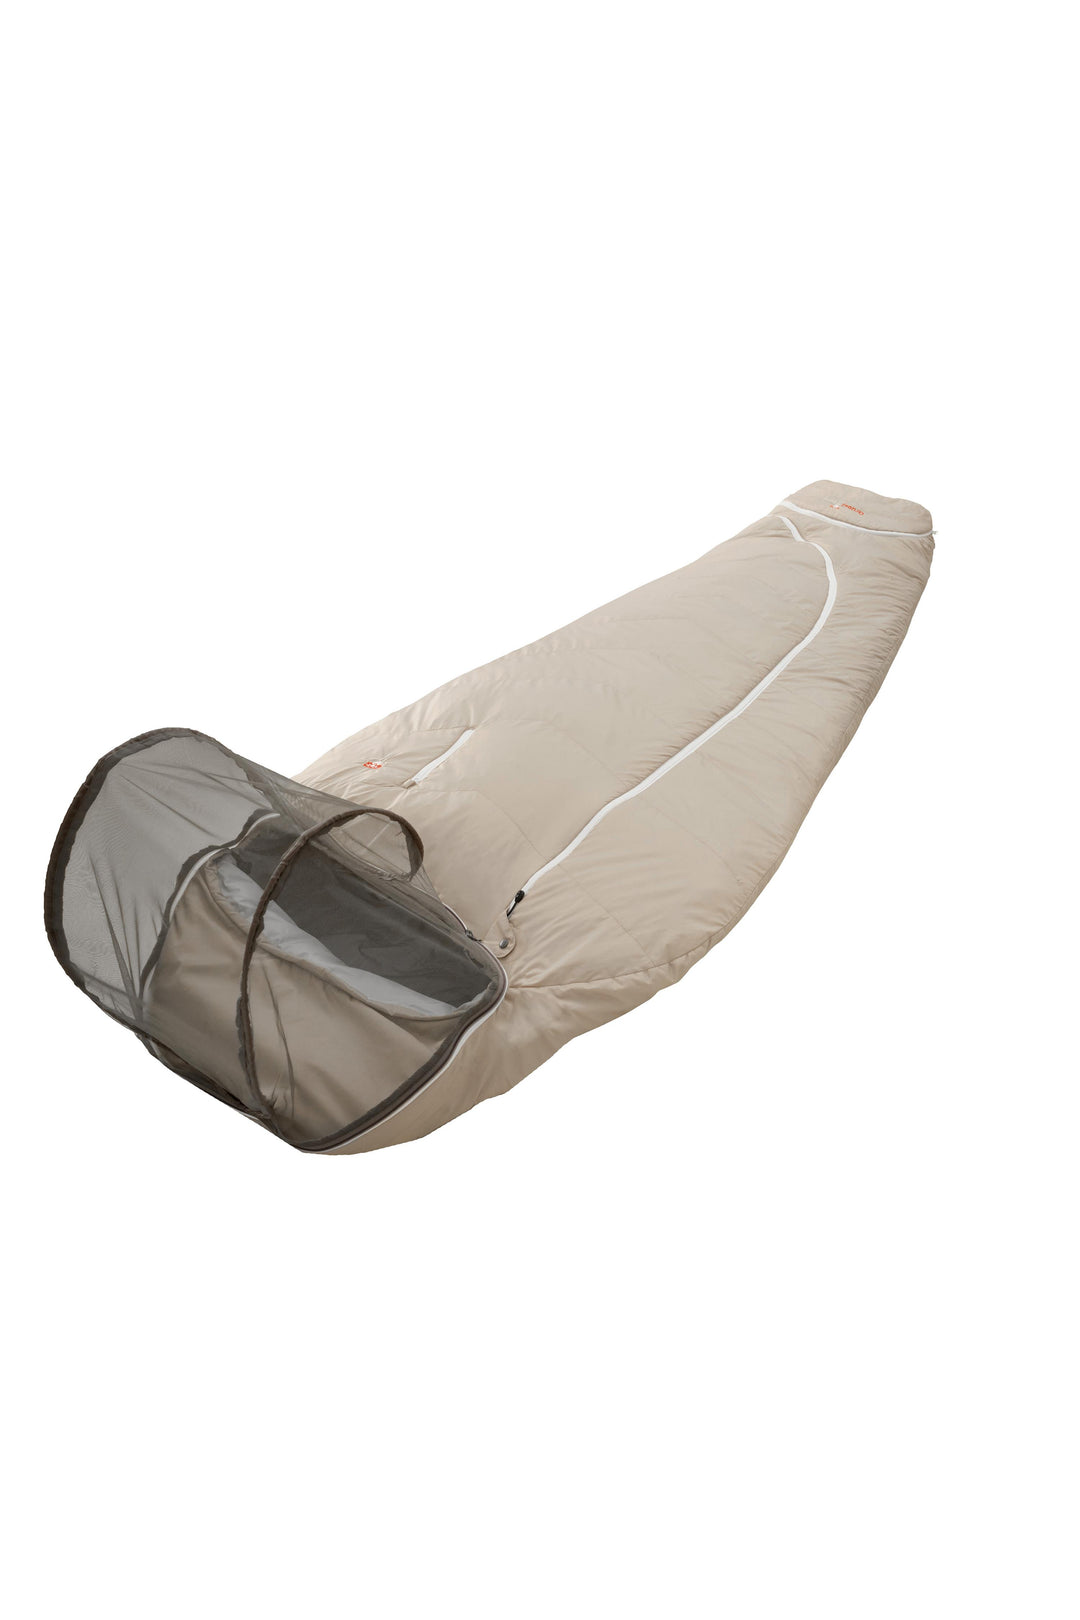 Grüezi bag Mumienschlafsack Biopod Wolle Tropical - kann mit Moskitokuppel aufgerüstet werden